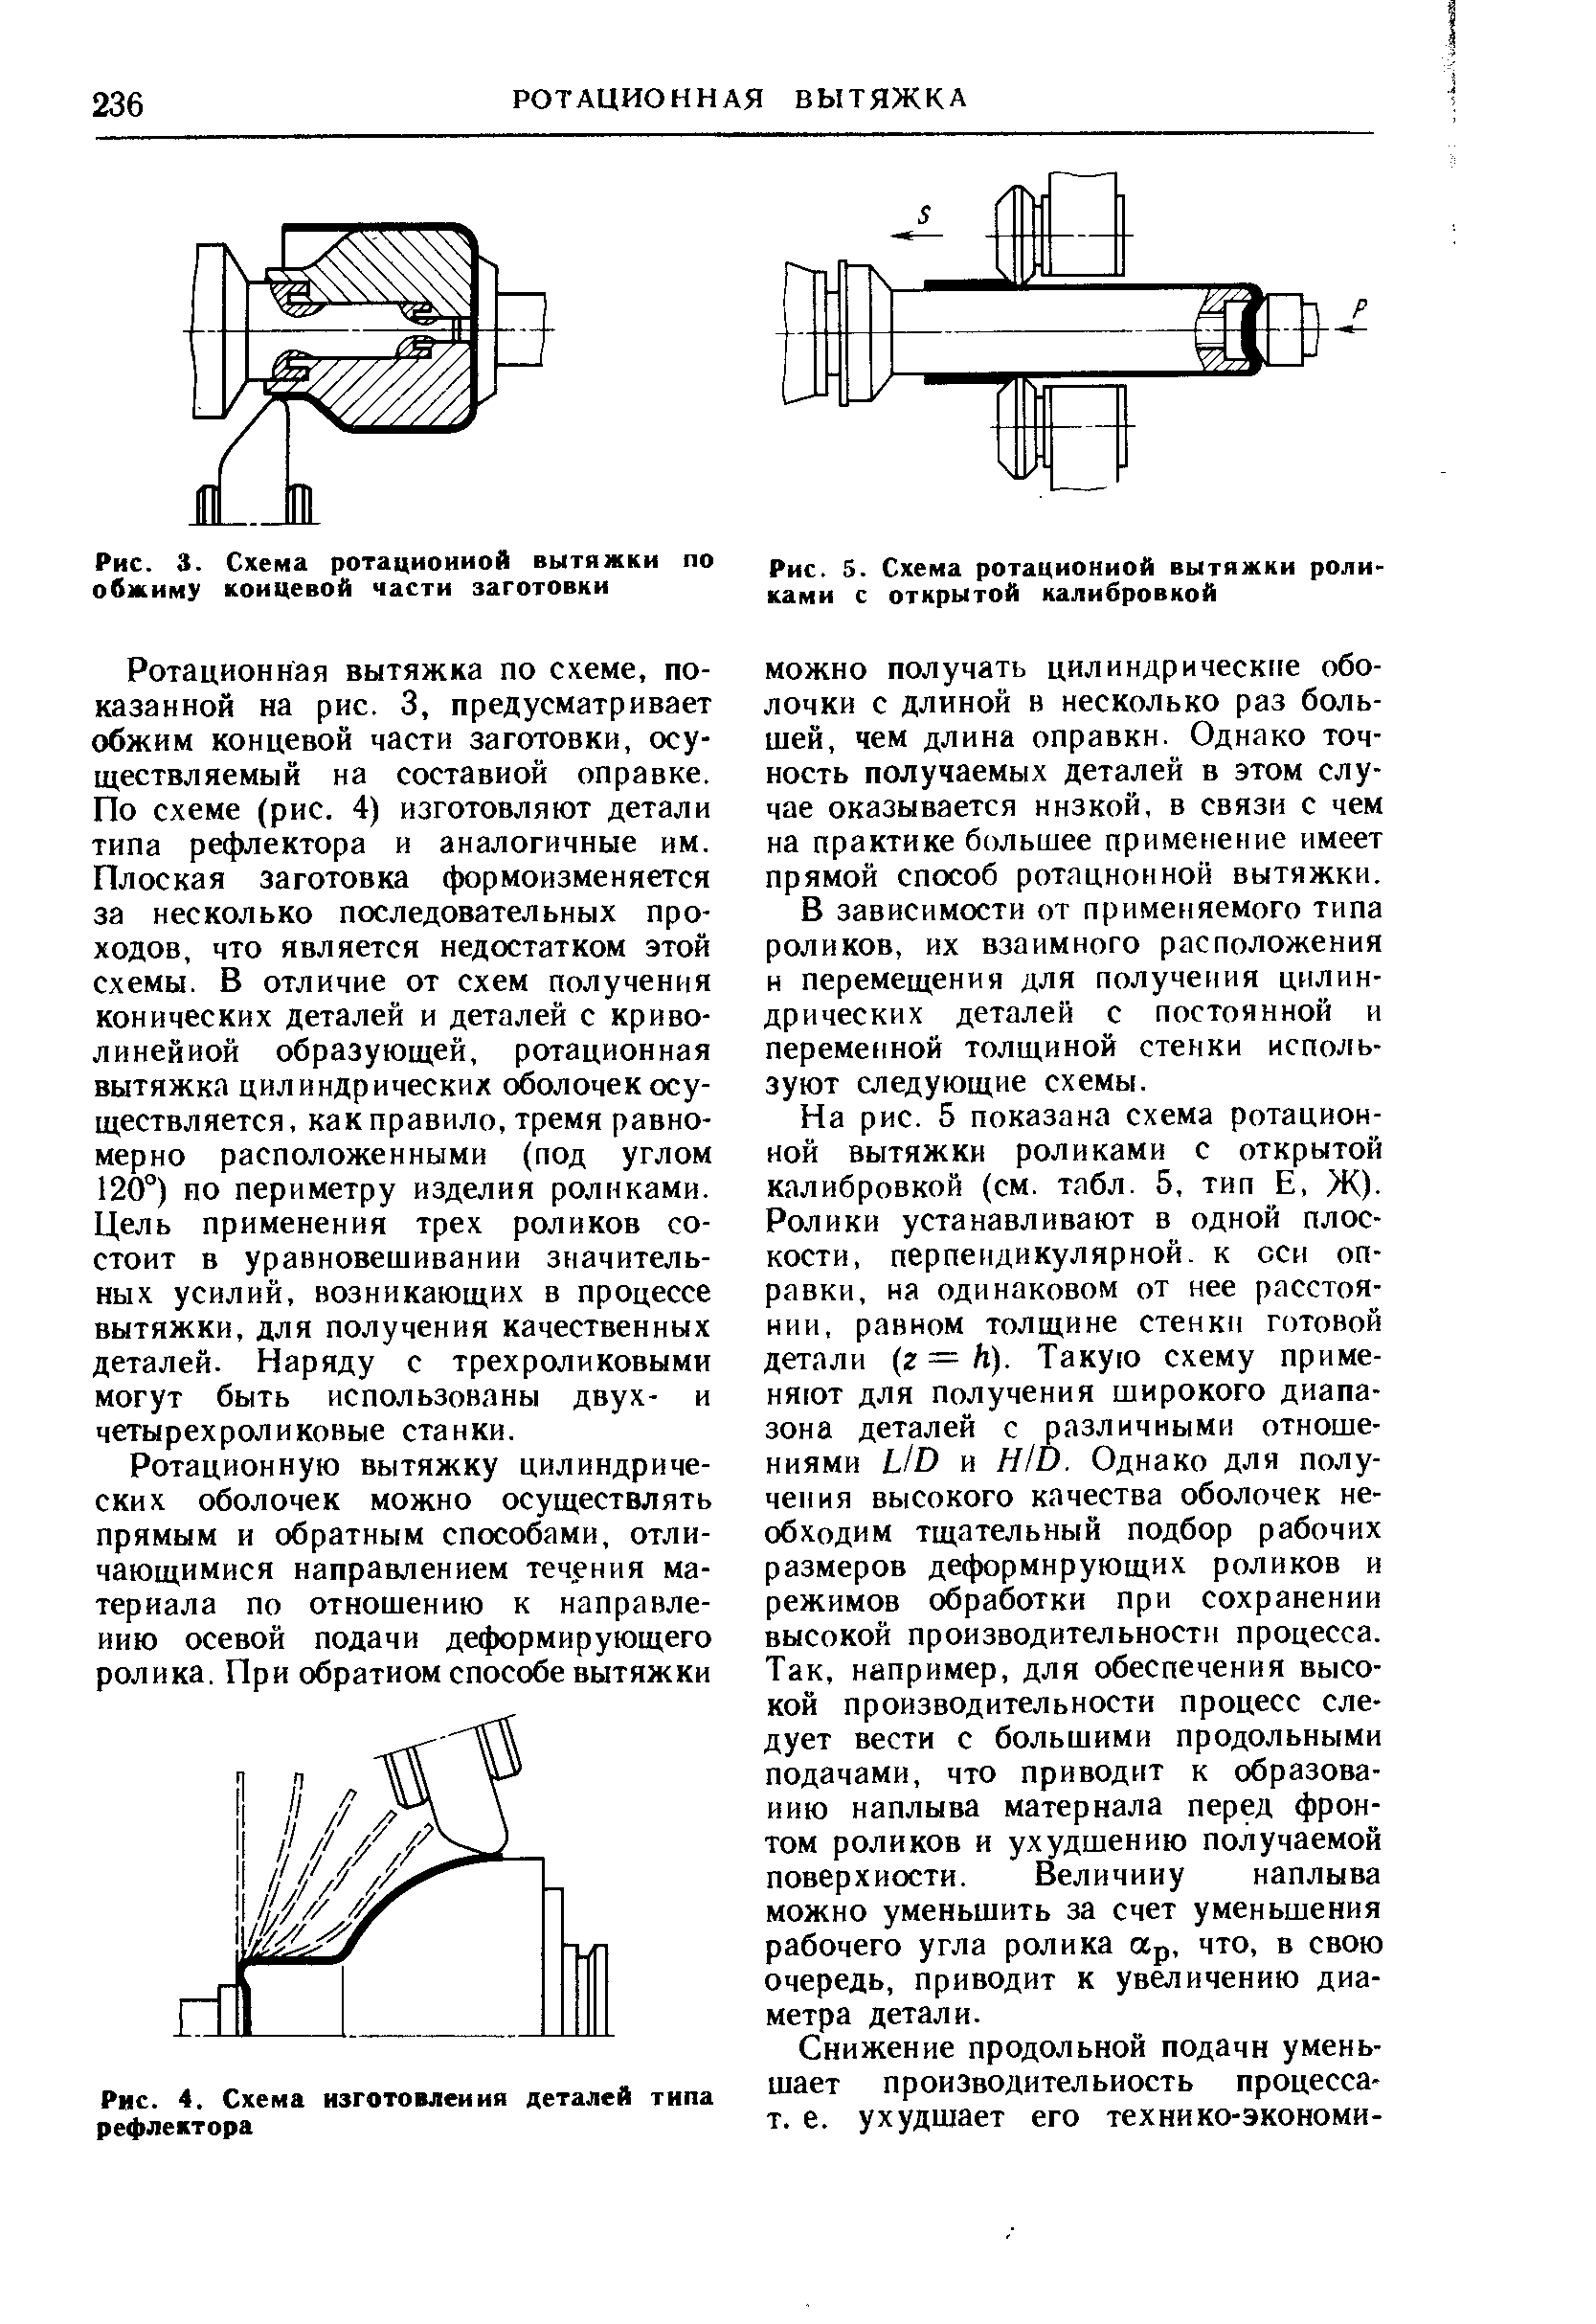 Рис. 3. Схема ротационной вытяжки по обжиму коицевой части заготовки
